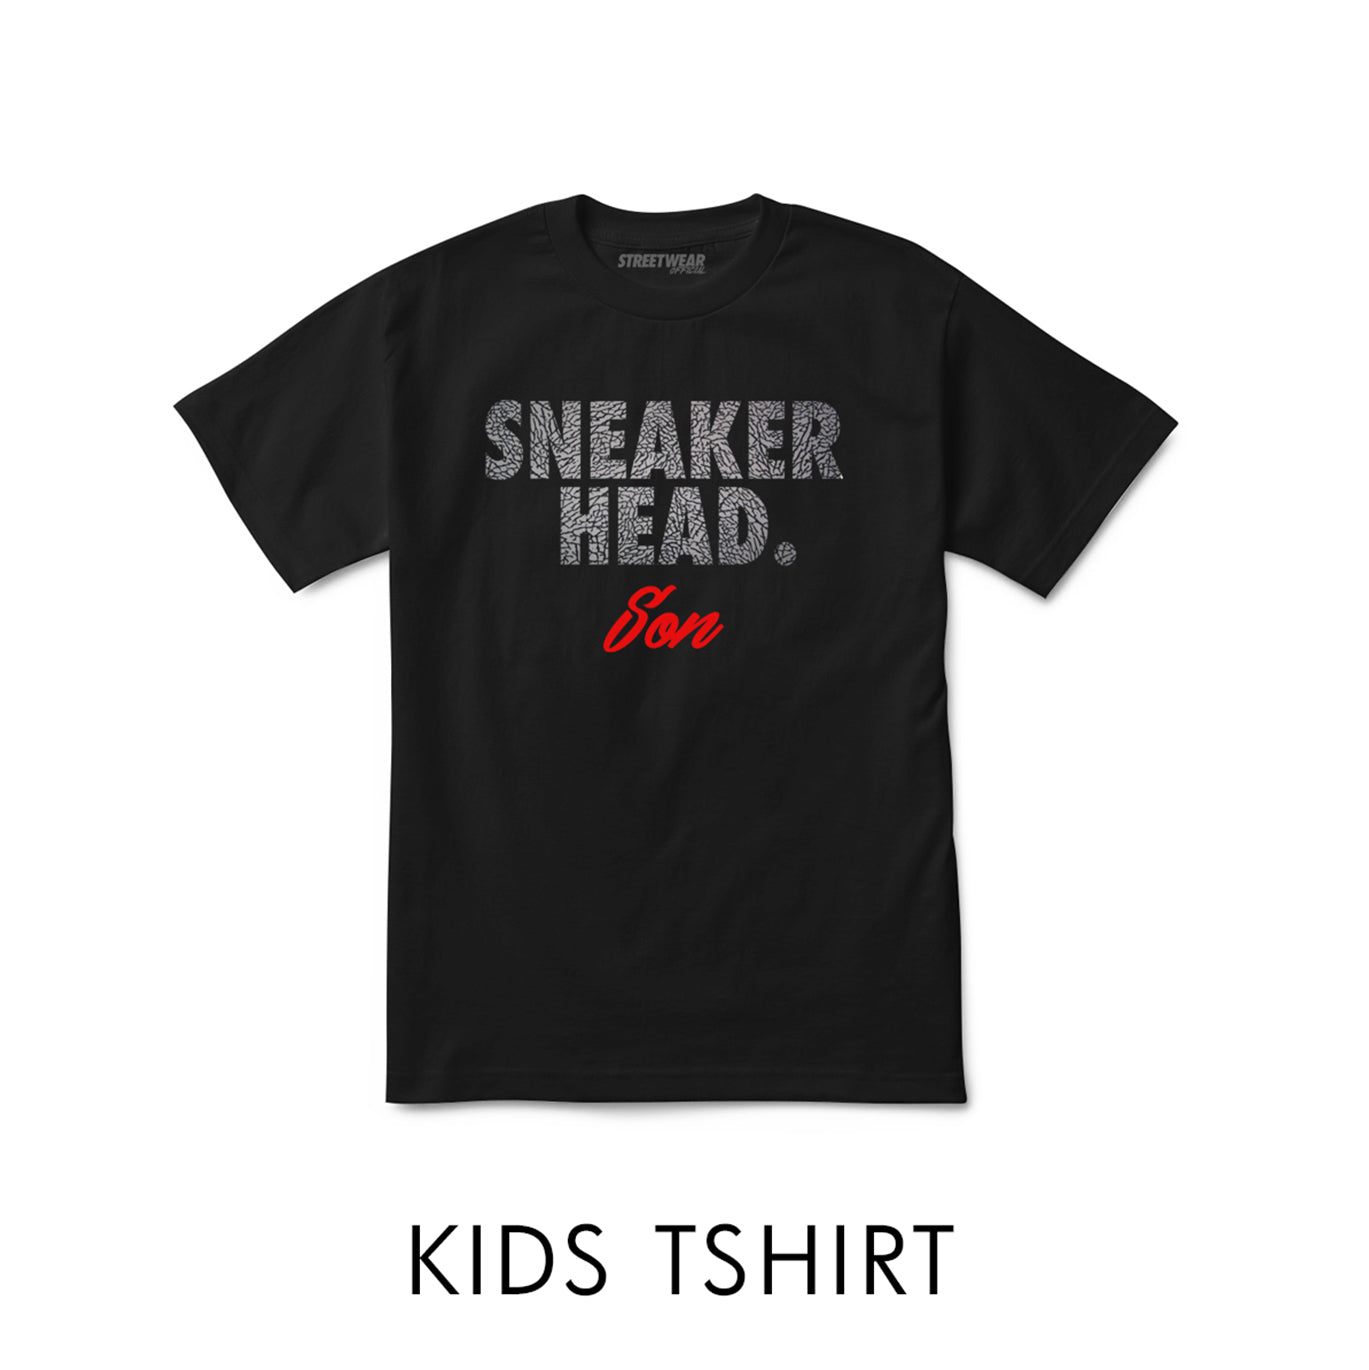 Sneaker Head Son - Kids